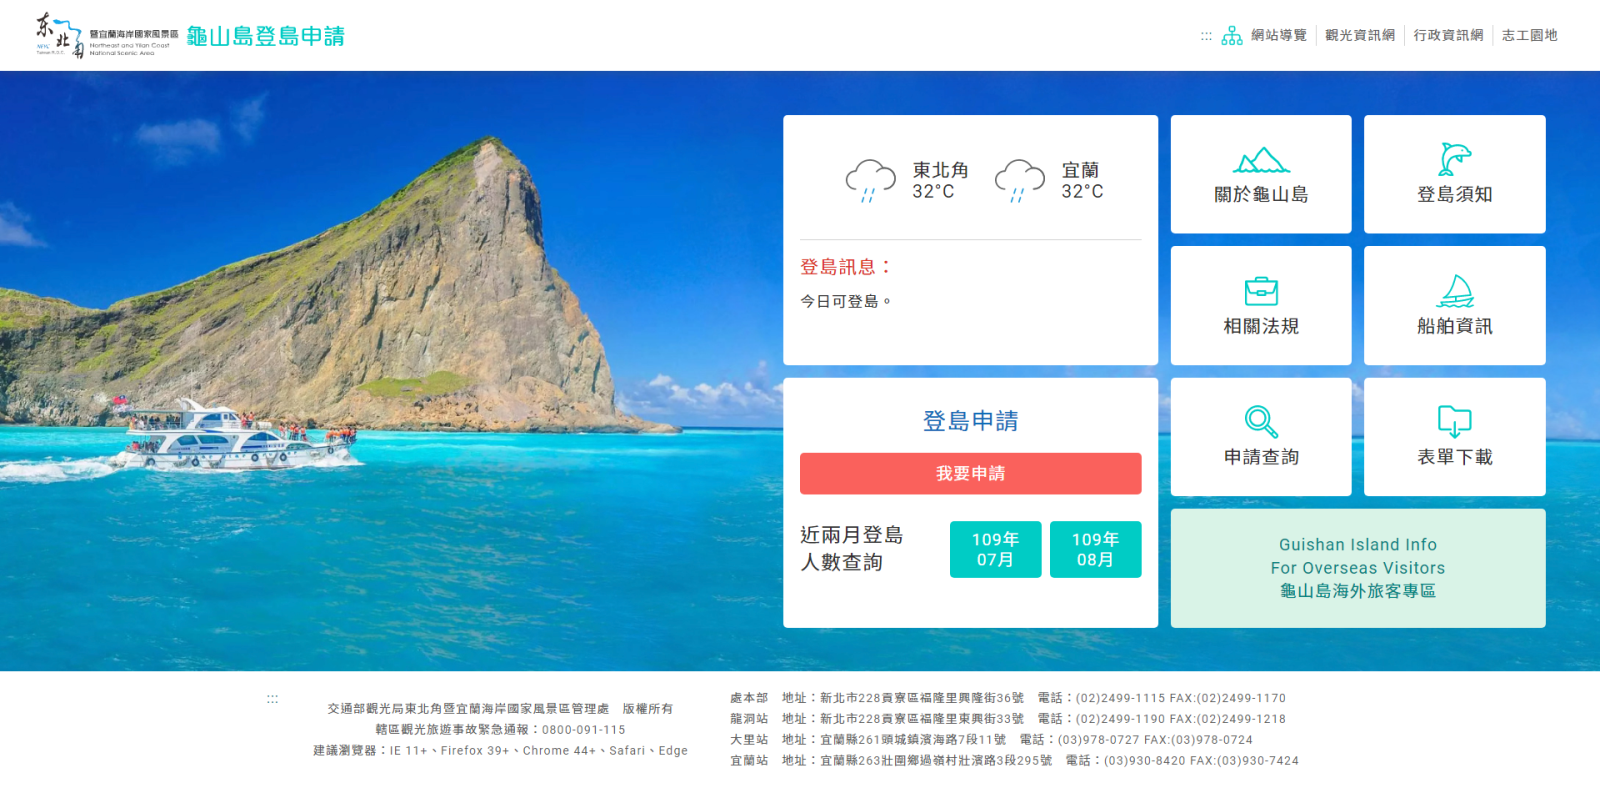 亀山島上陸申請システムの新バージョン